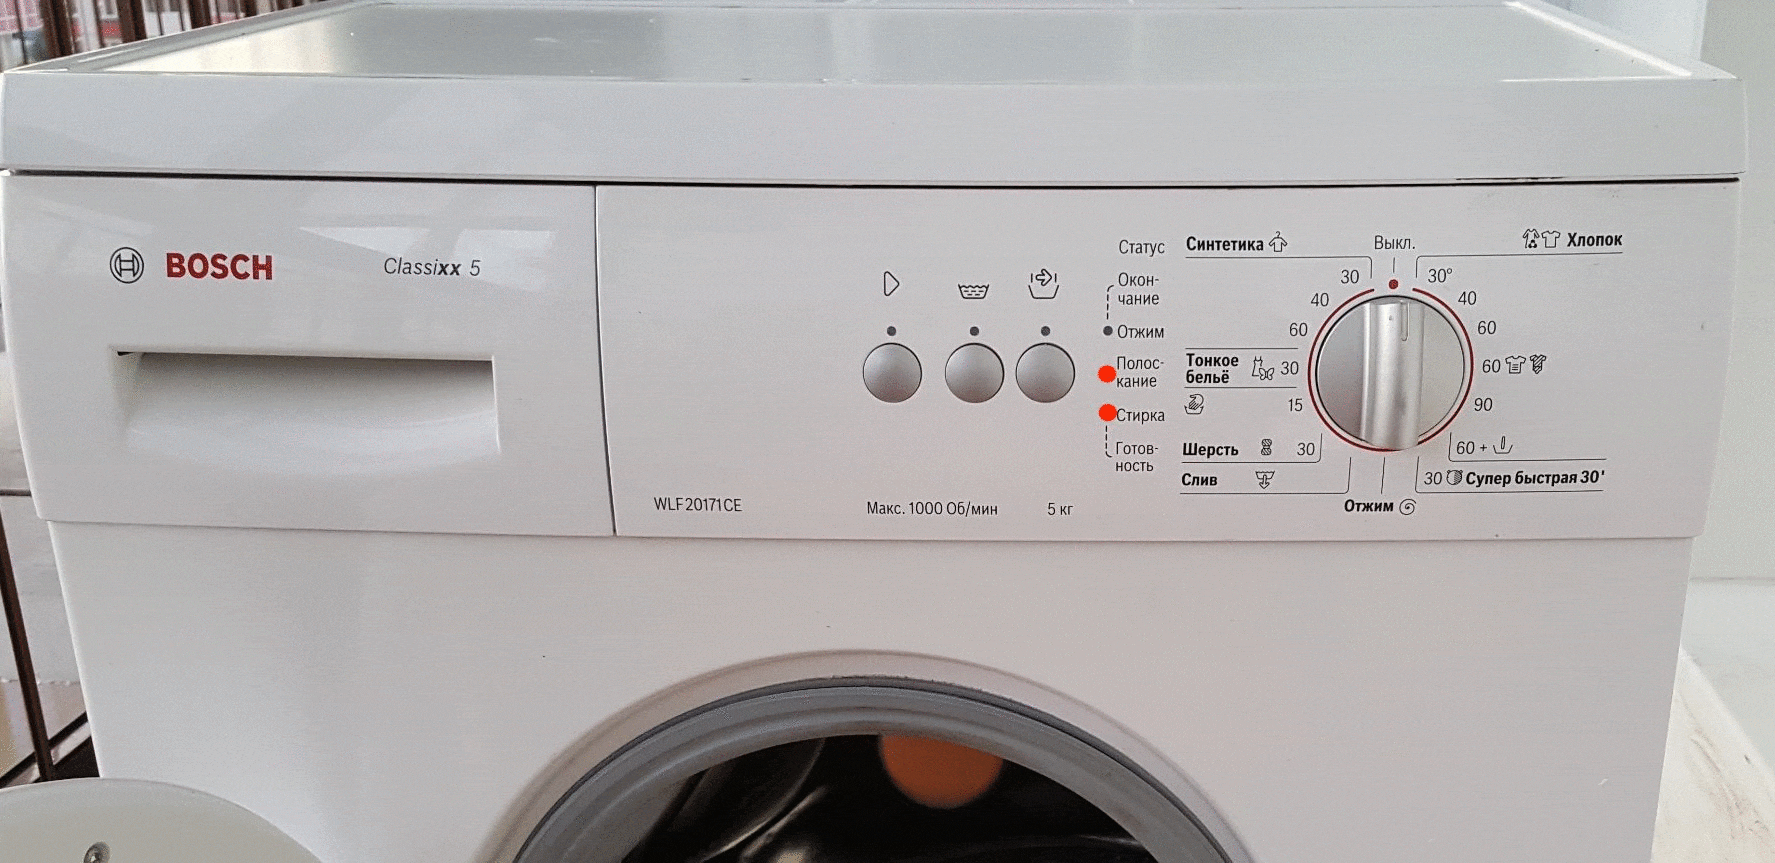 Коды ошибок для стиральных машин bosch, расшифровка, ремонт